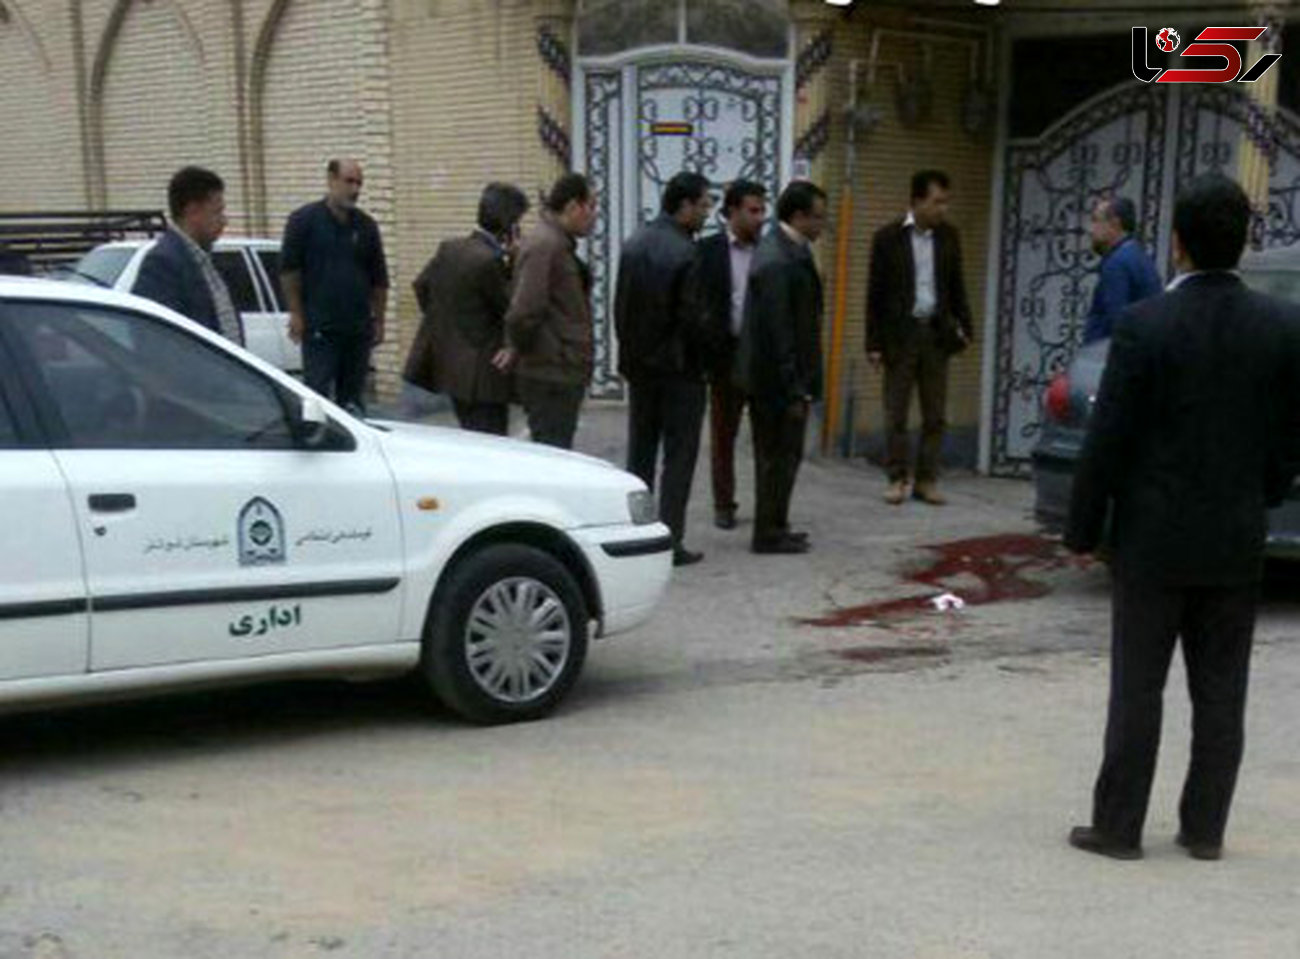 آخرین جزئیات از قتل پزشک تهرانی در شوشتر / از او خواستم مرا معاف از سربازی کند نپزیرفت و ... + عکس 